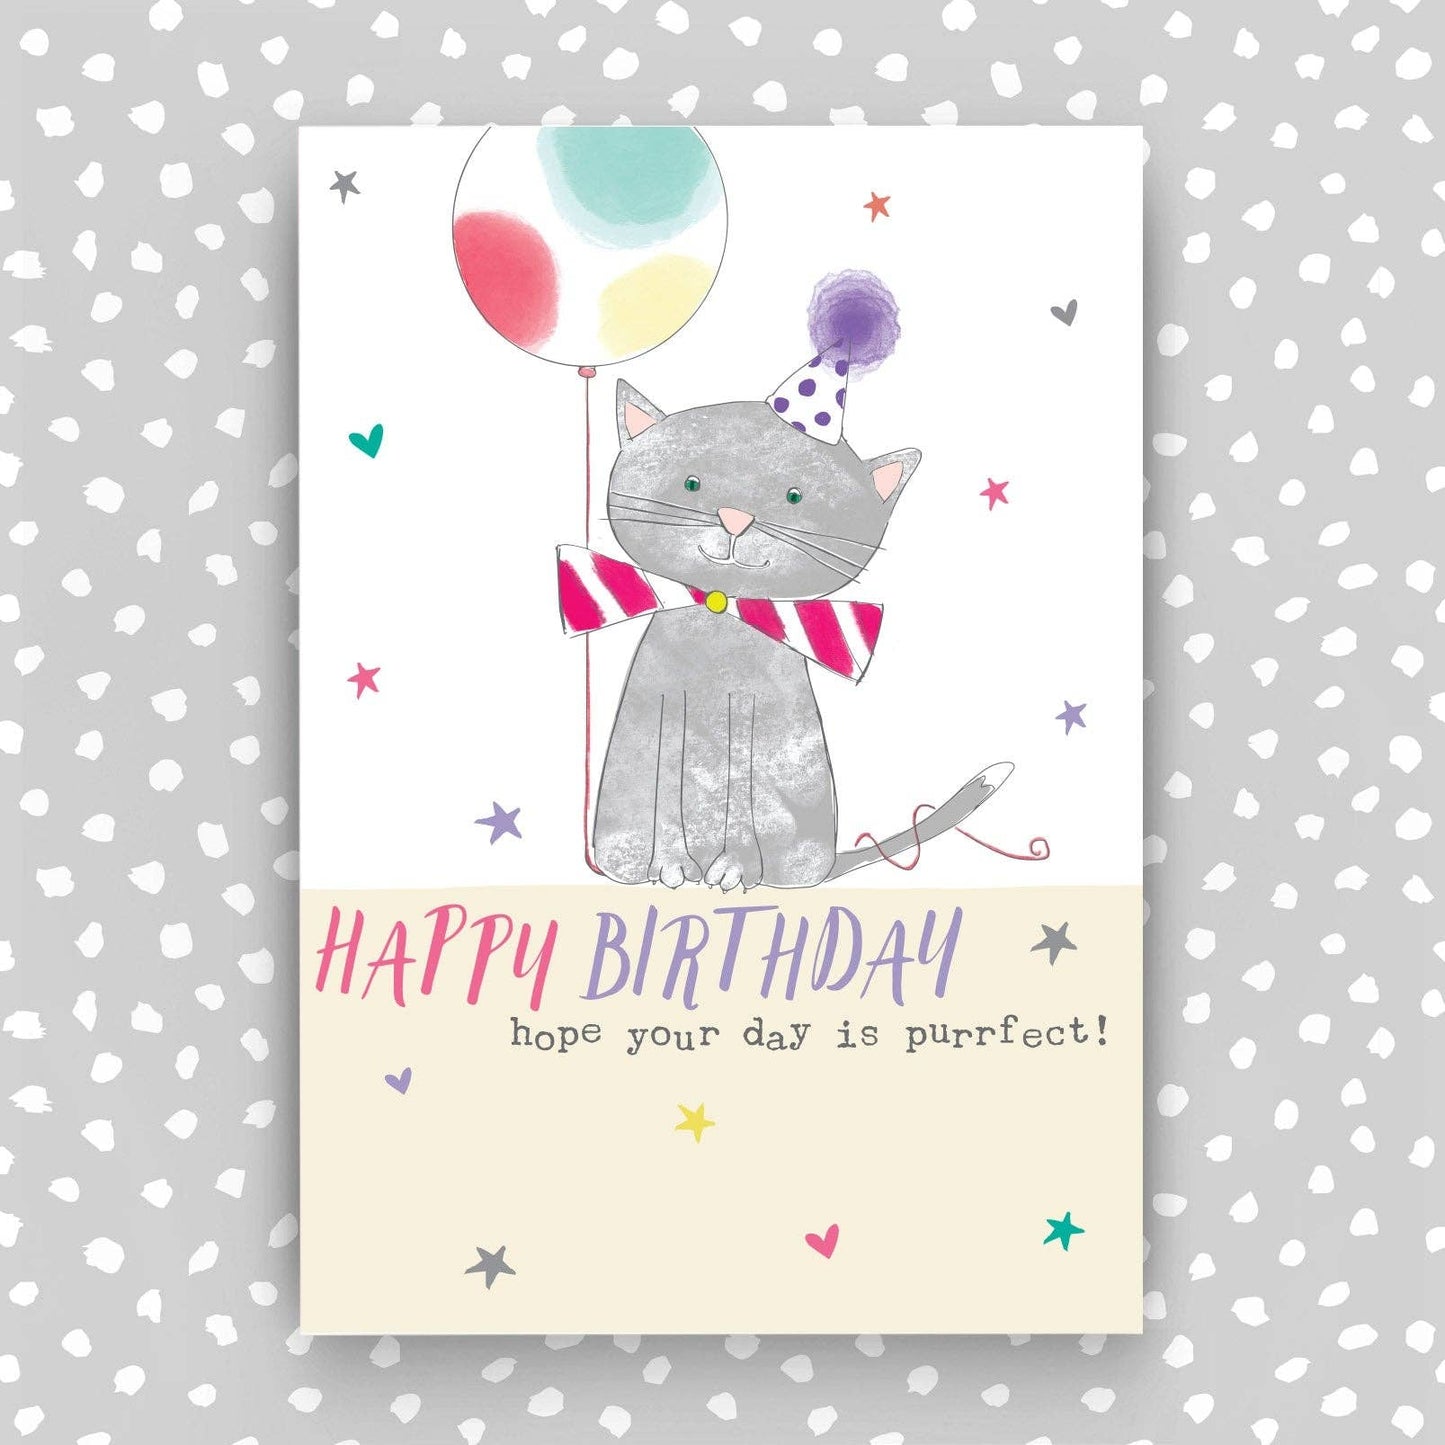 Children's Happy Birthday Card - Cute Kitten design